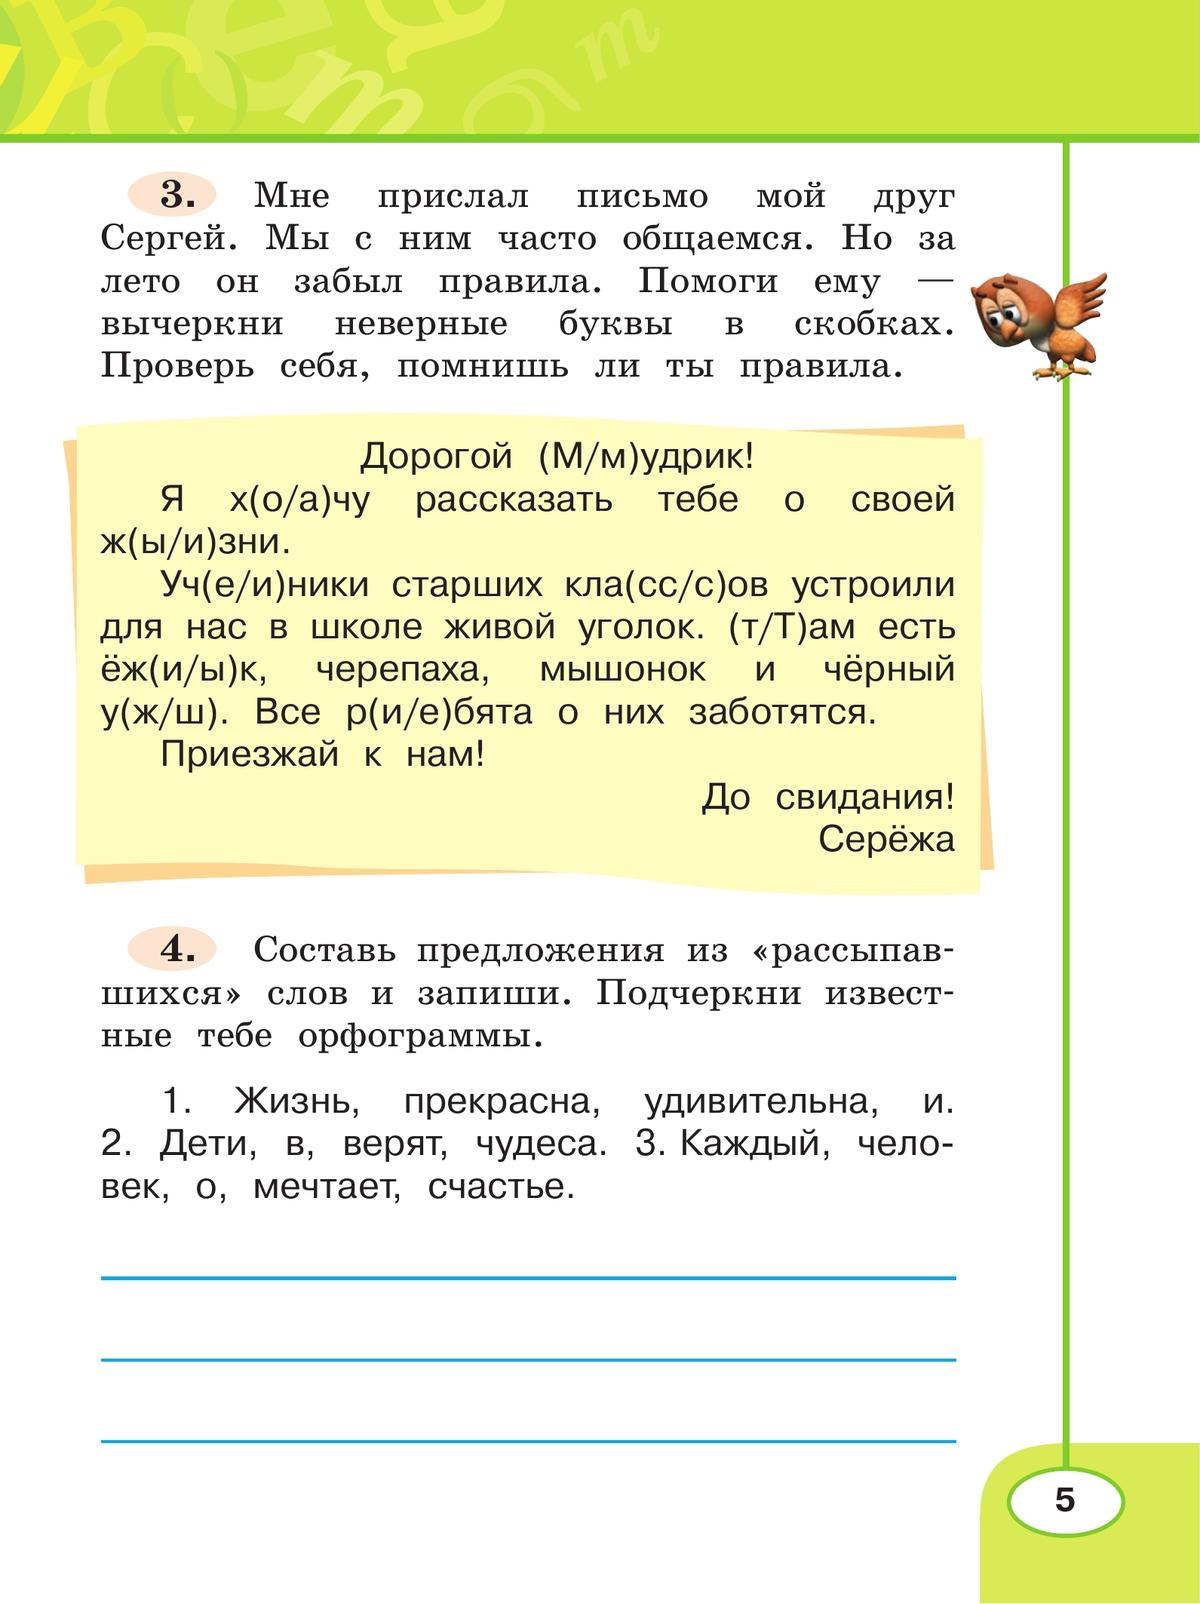 Русский язык. Рабочая тетрадь. 2 класс. В 2 частях. Часть 1 5